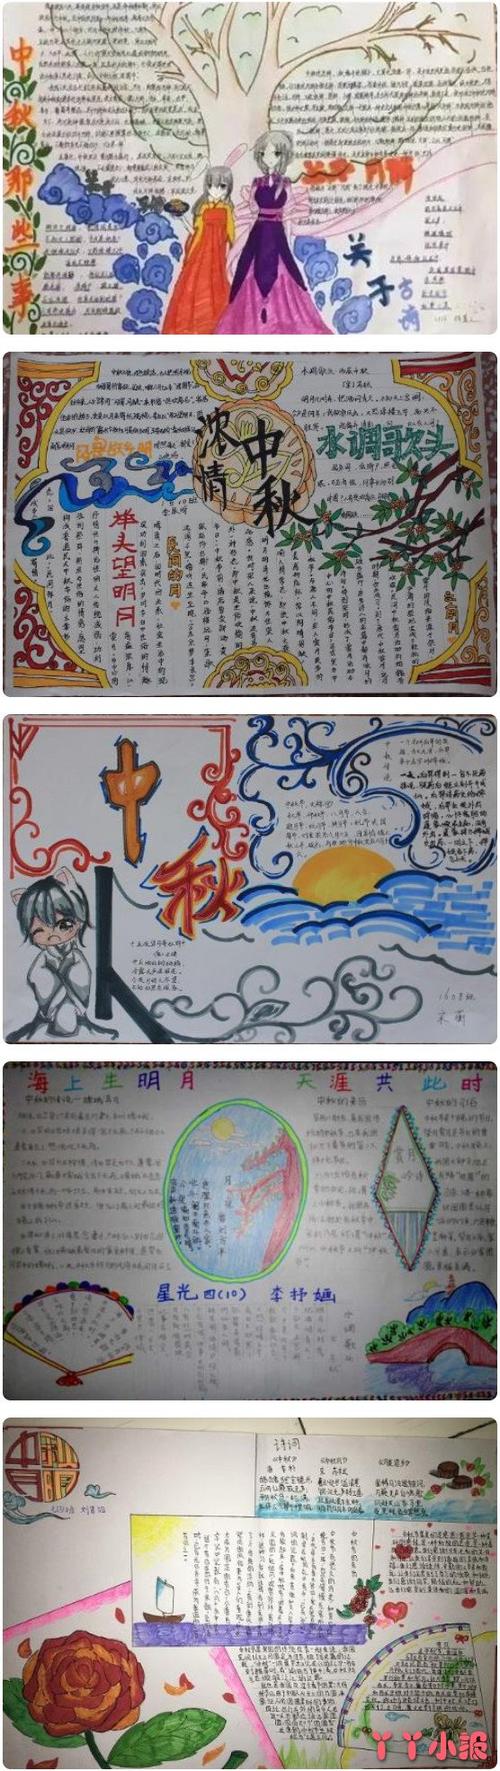 张好看的中秋节的手抄报模板图喜欢的小朋友们可以简单的参考一些